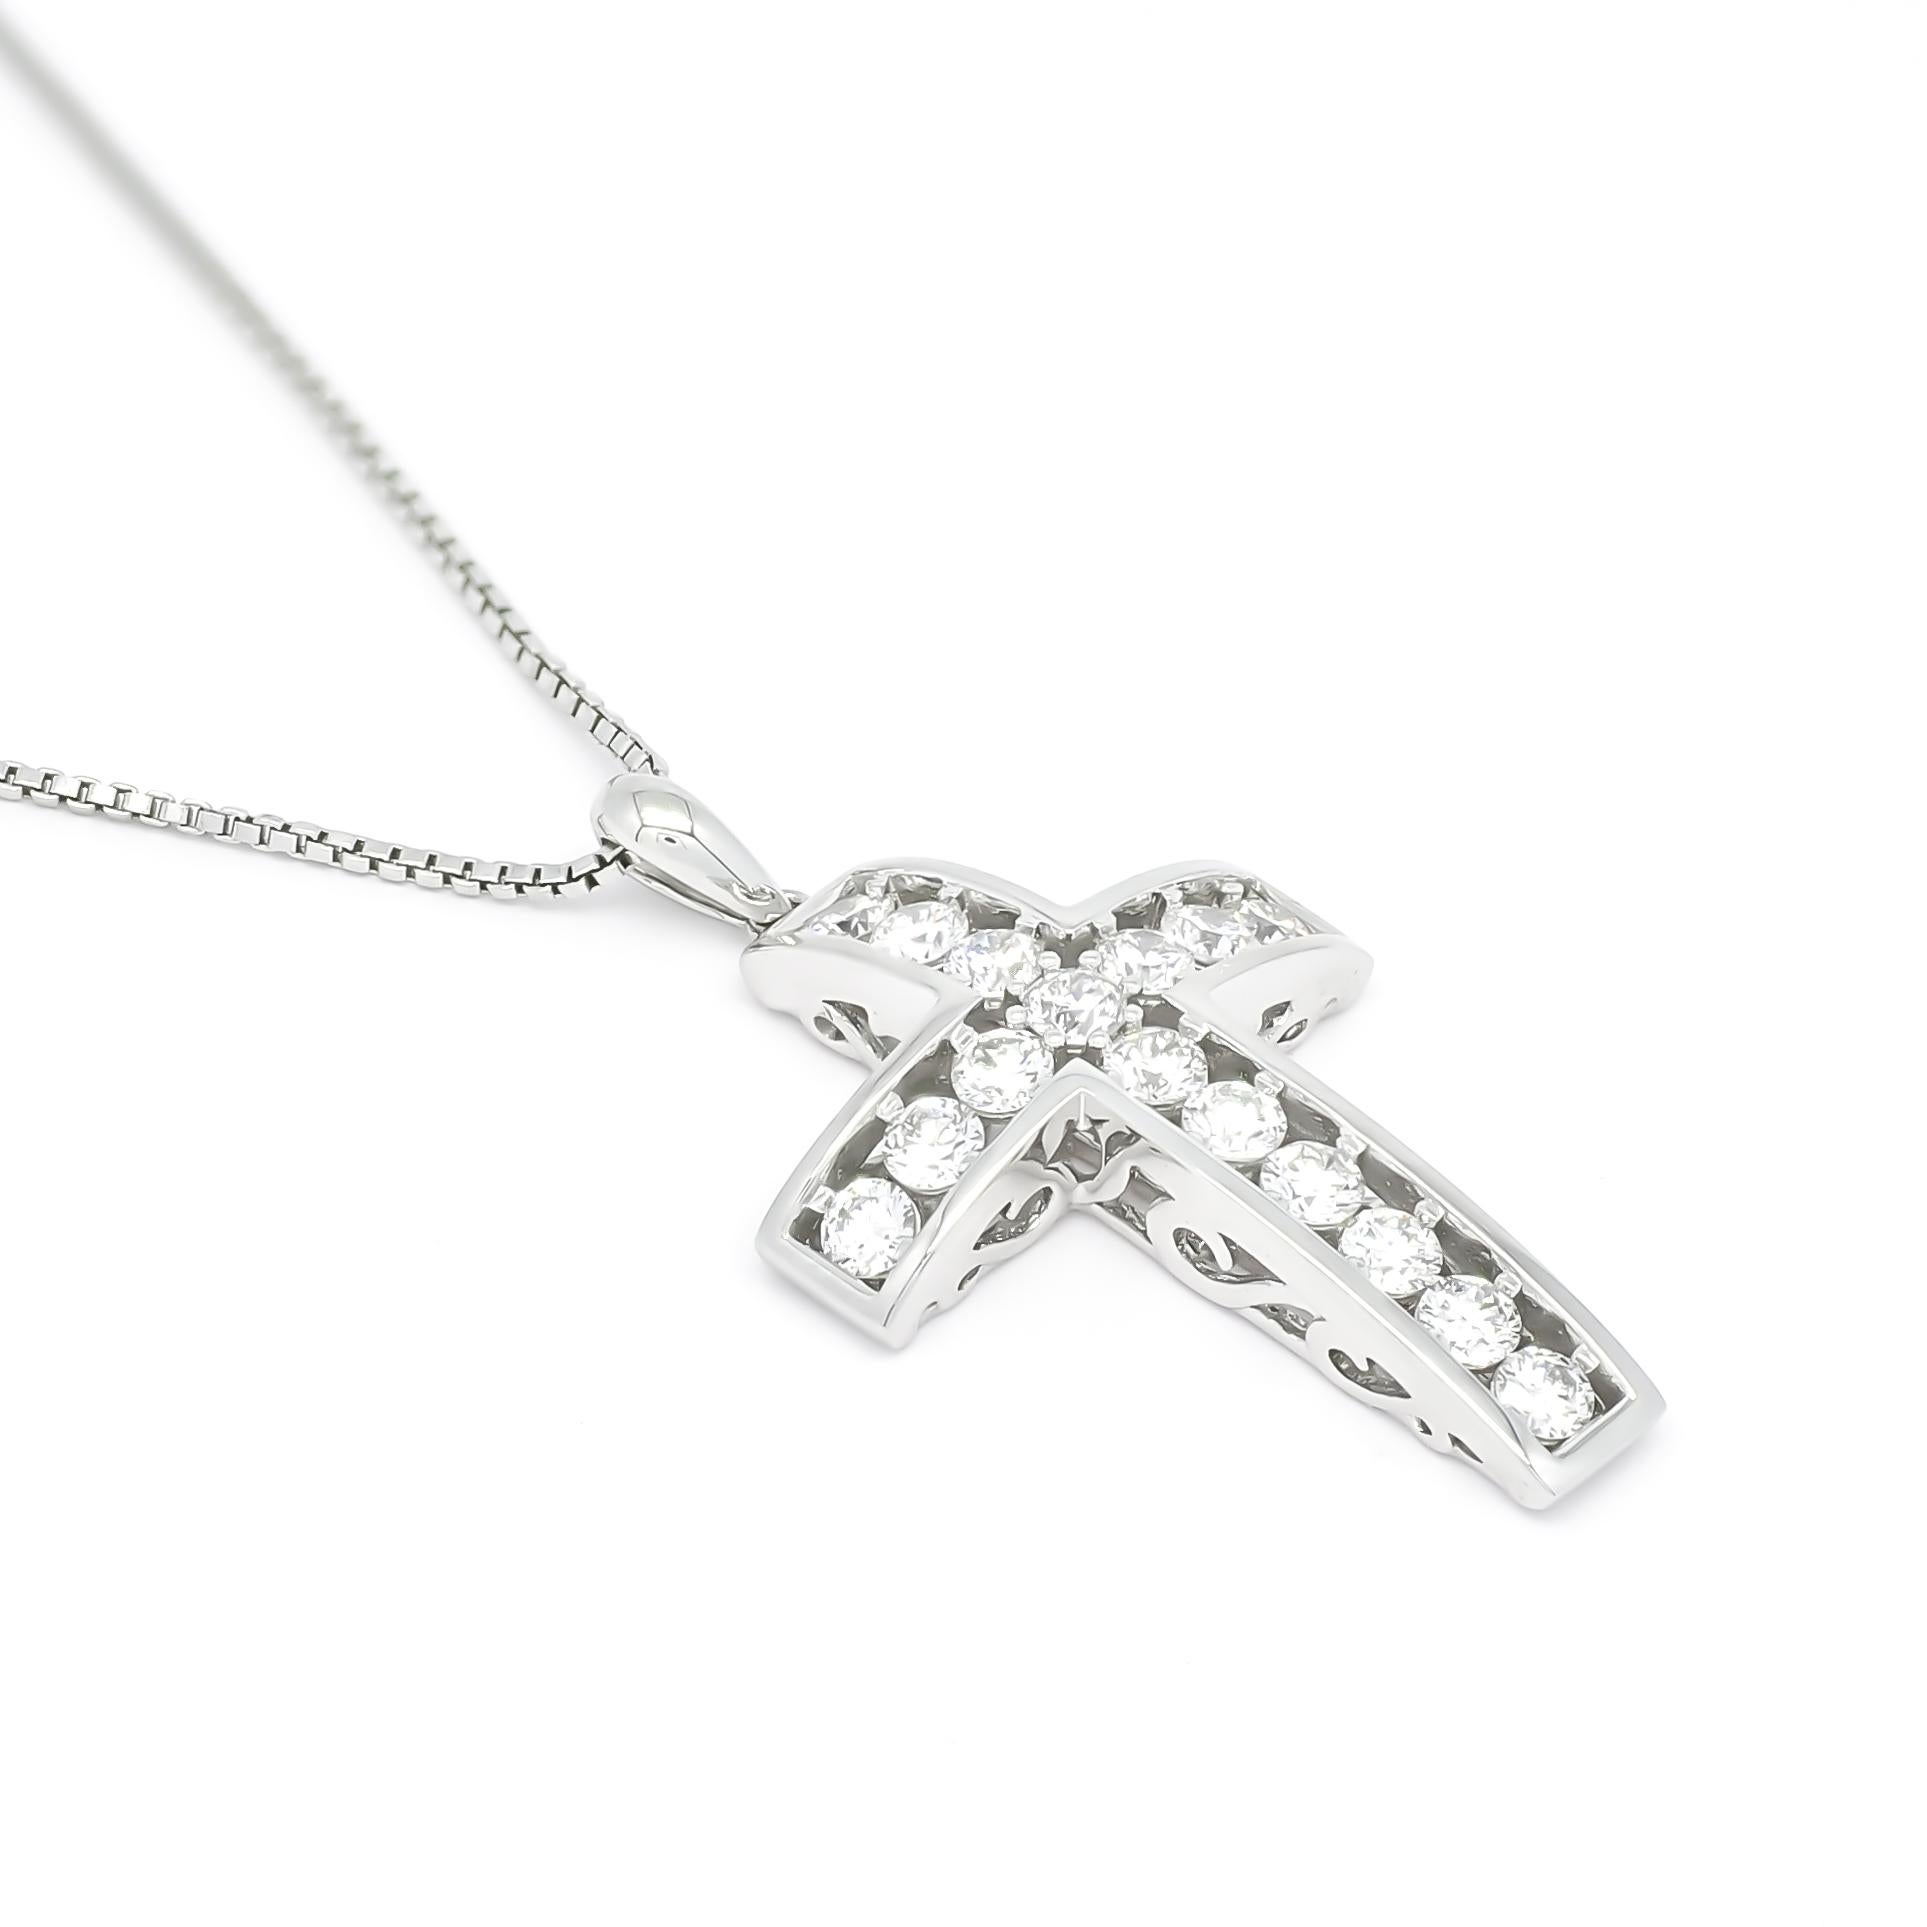 Nous sommes ravis de vous présenter l'exquis pendentif en diamant Nature, un superbe collier pendentif crucifix vintage en or blanc 18KT qui incarne l'élégance intemporelle et un profond symbolisme.

Réalisé avec une attention méticuleuse aux